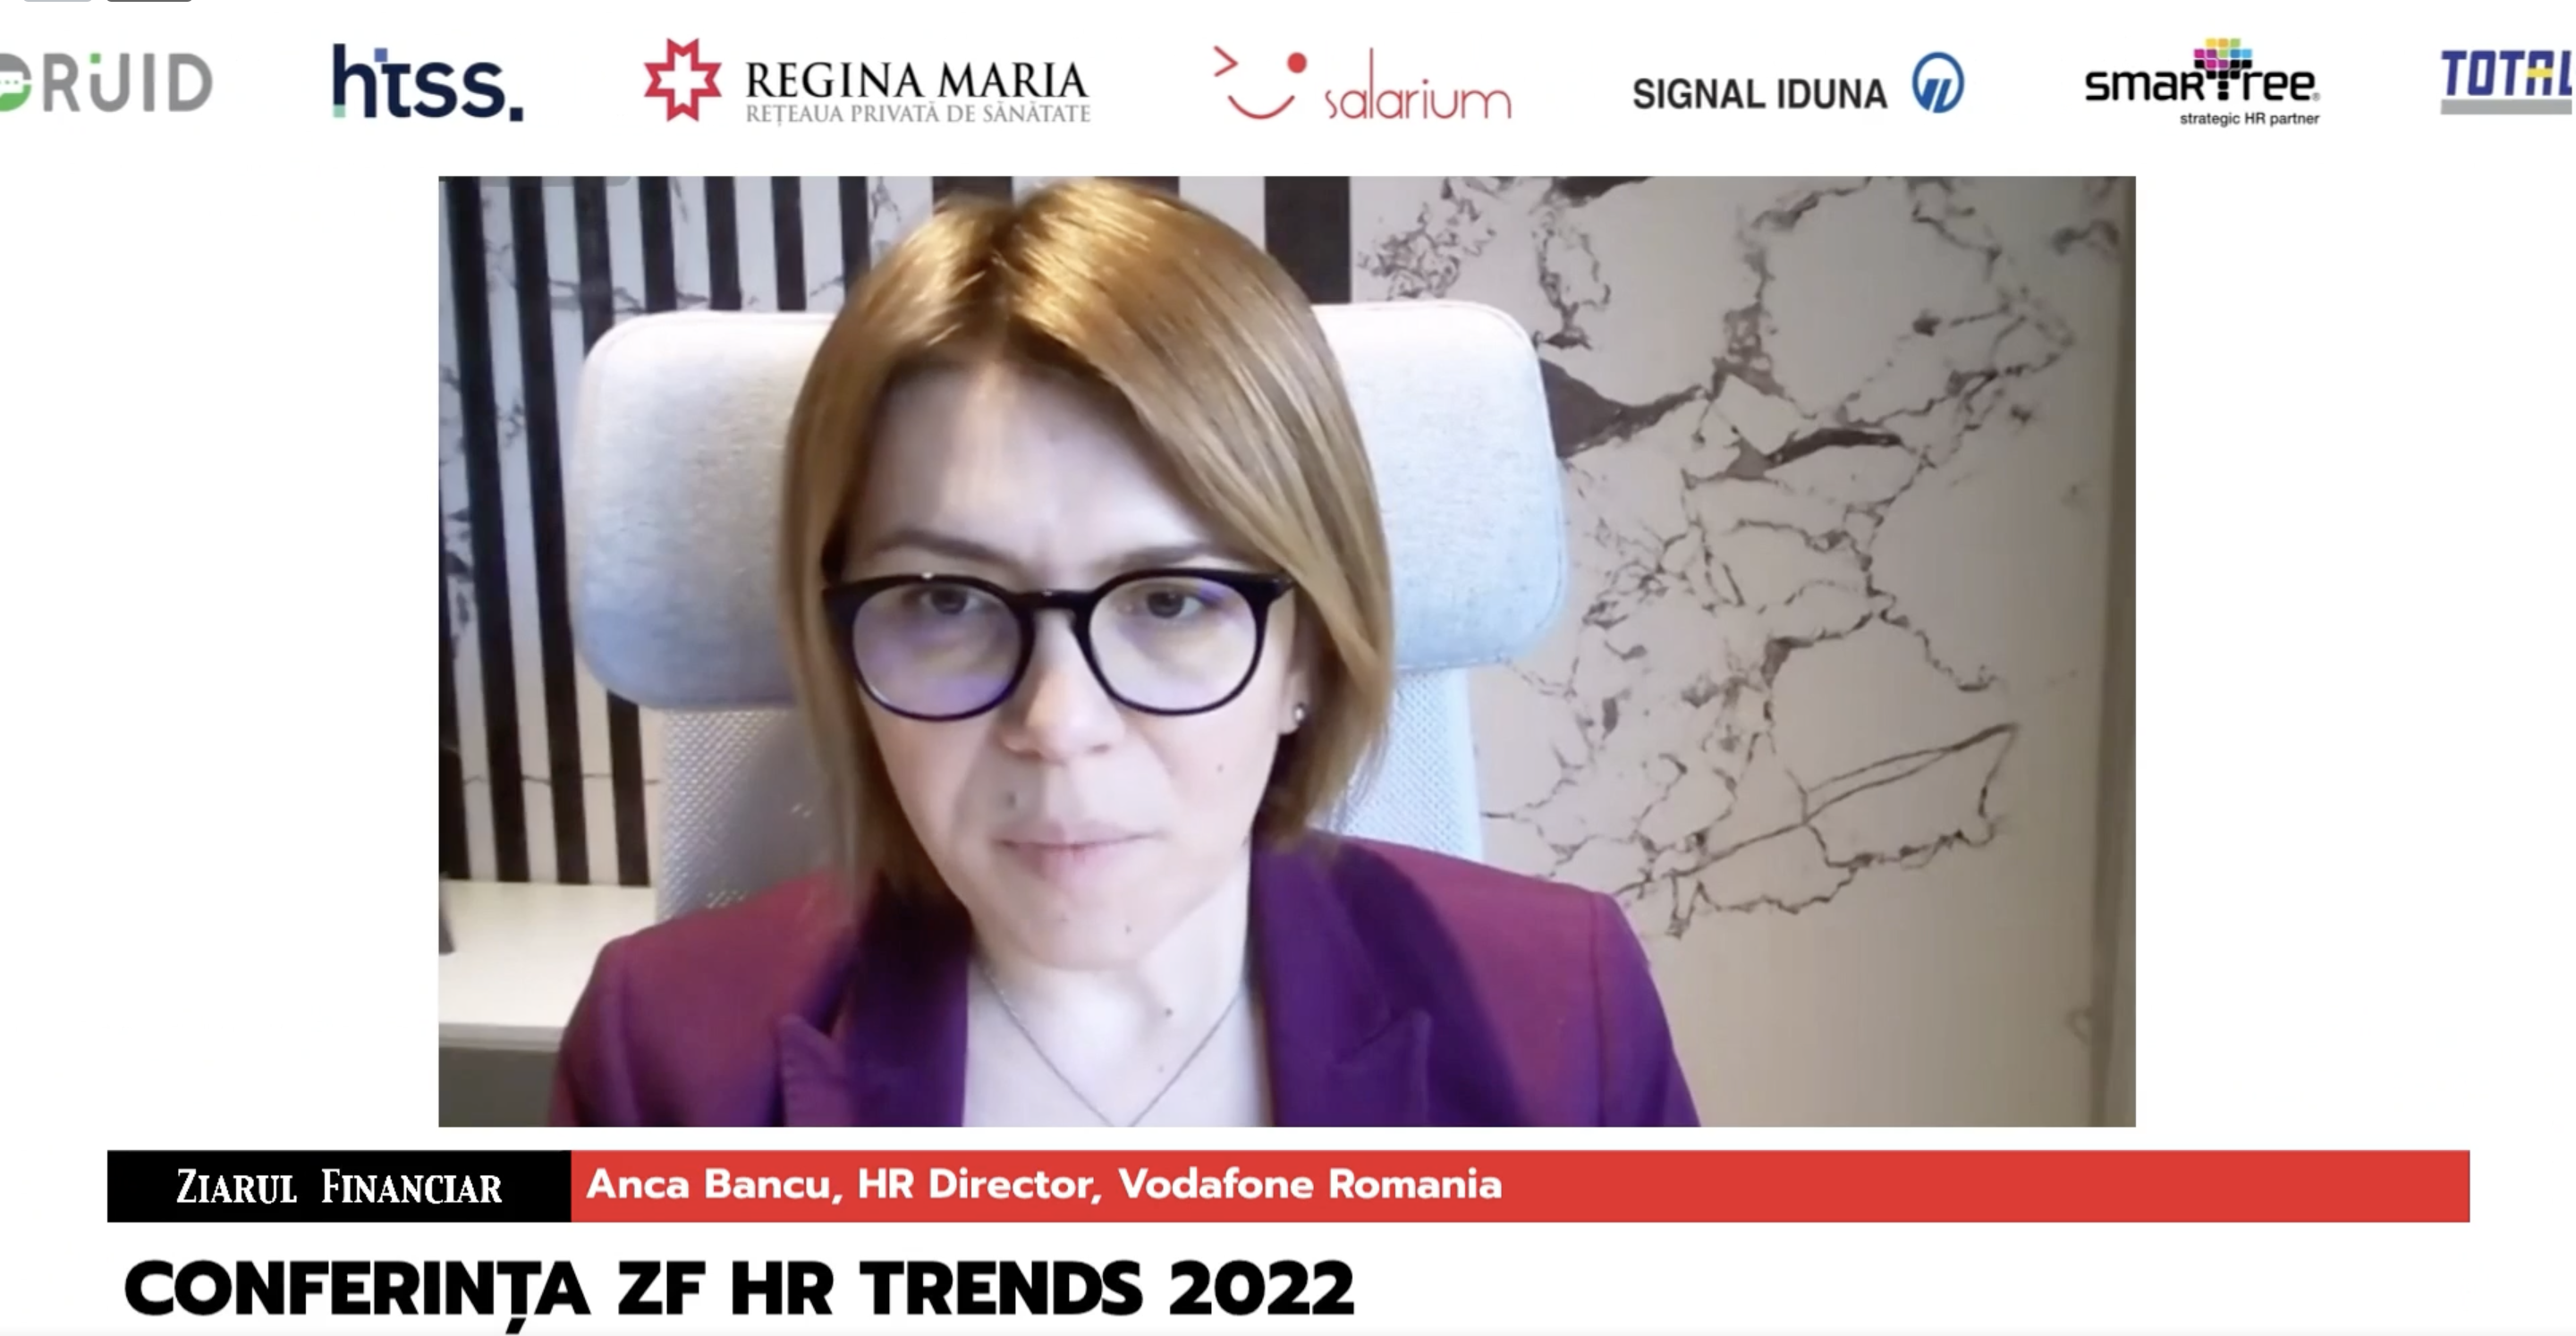 Conferinţa ZF HR Trends 2022: Resetarea pieţei muncii. Anca Bancu, HR Director, Vodafone România: Continuăm recrutarea în partea de tehnologie. Avem un target la nivel global de peste 7.000 de angajaţi în zona de IT